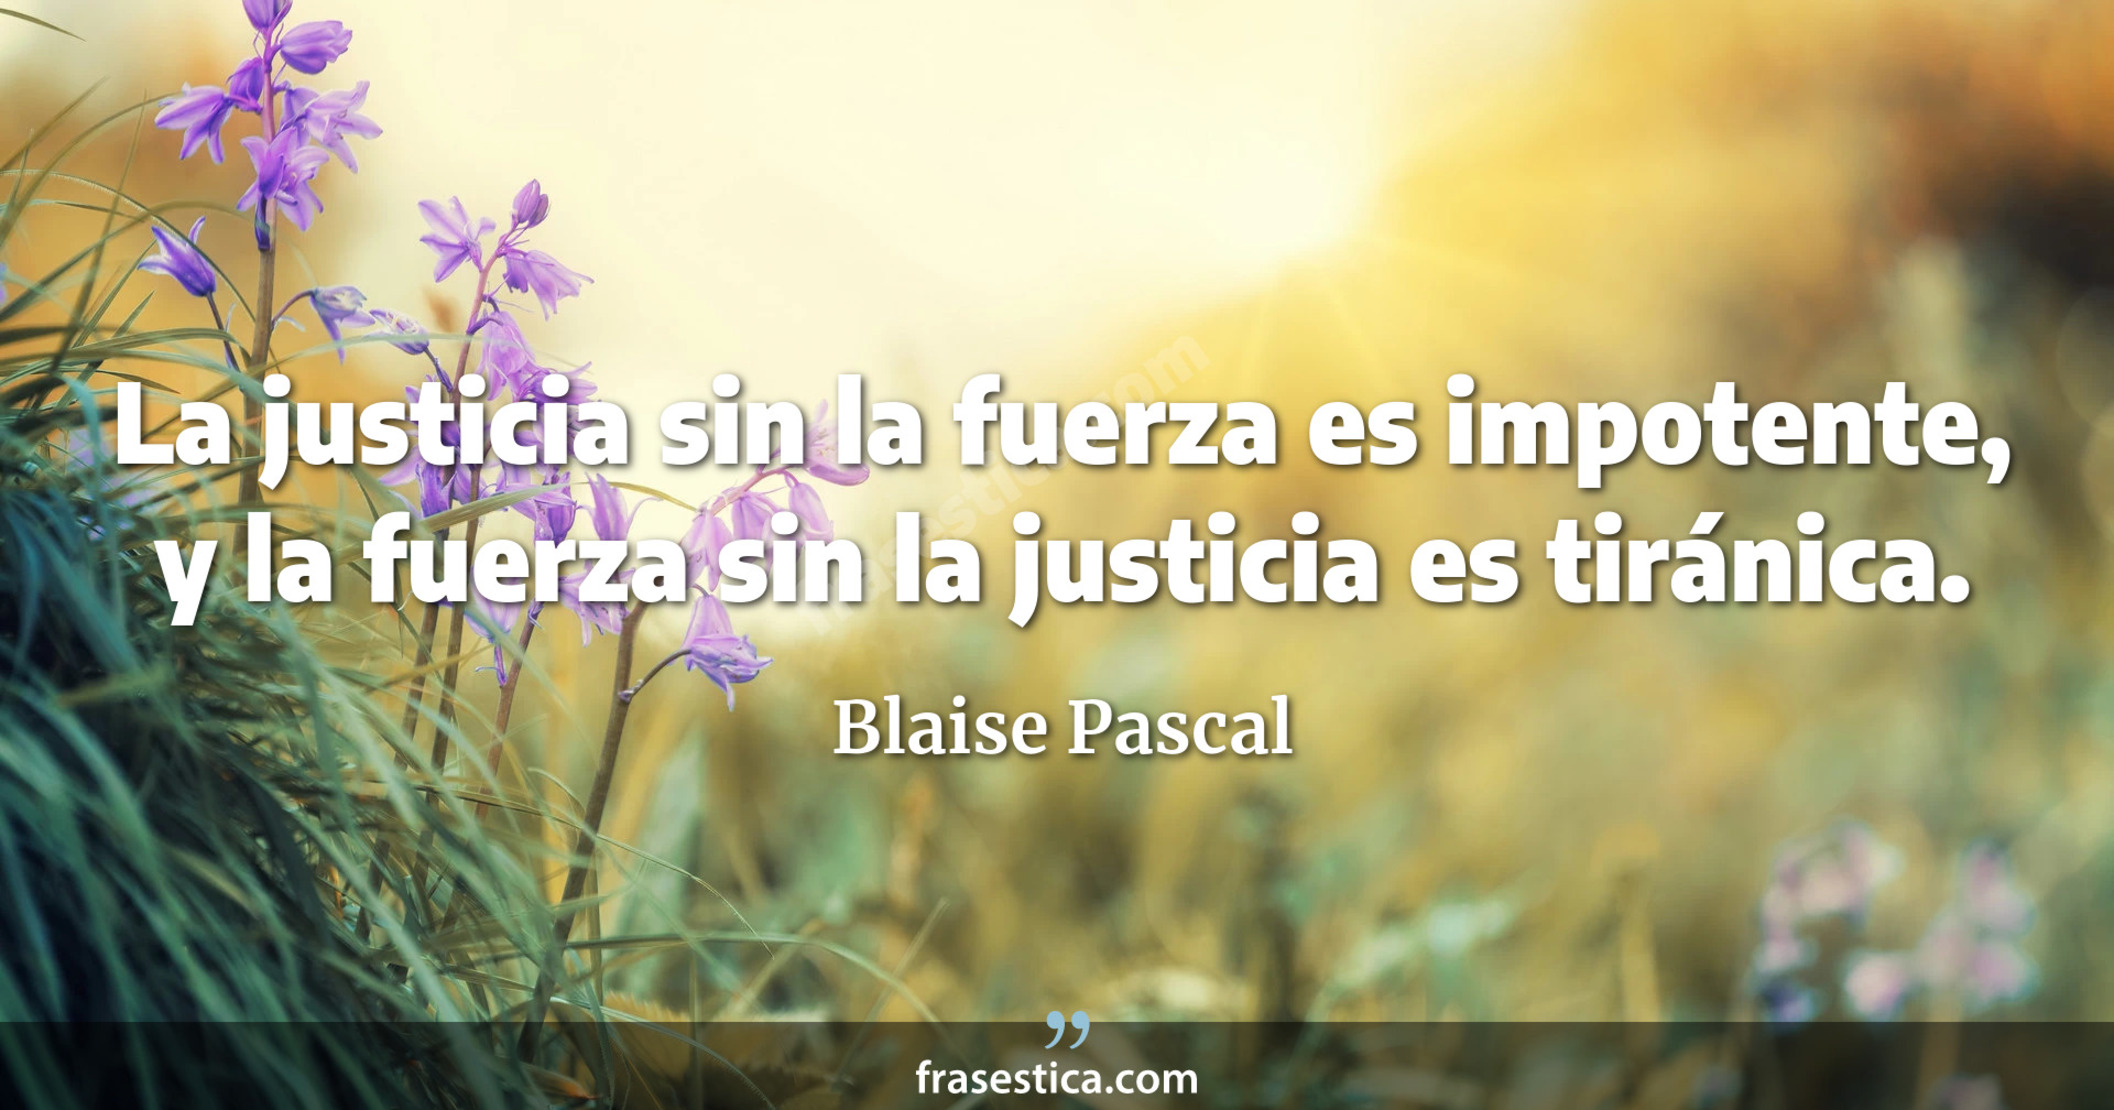 La justicia sin la fuerza es impotente, y la fuerza sin la justicia es tiránica. - Blaise Pascal